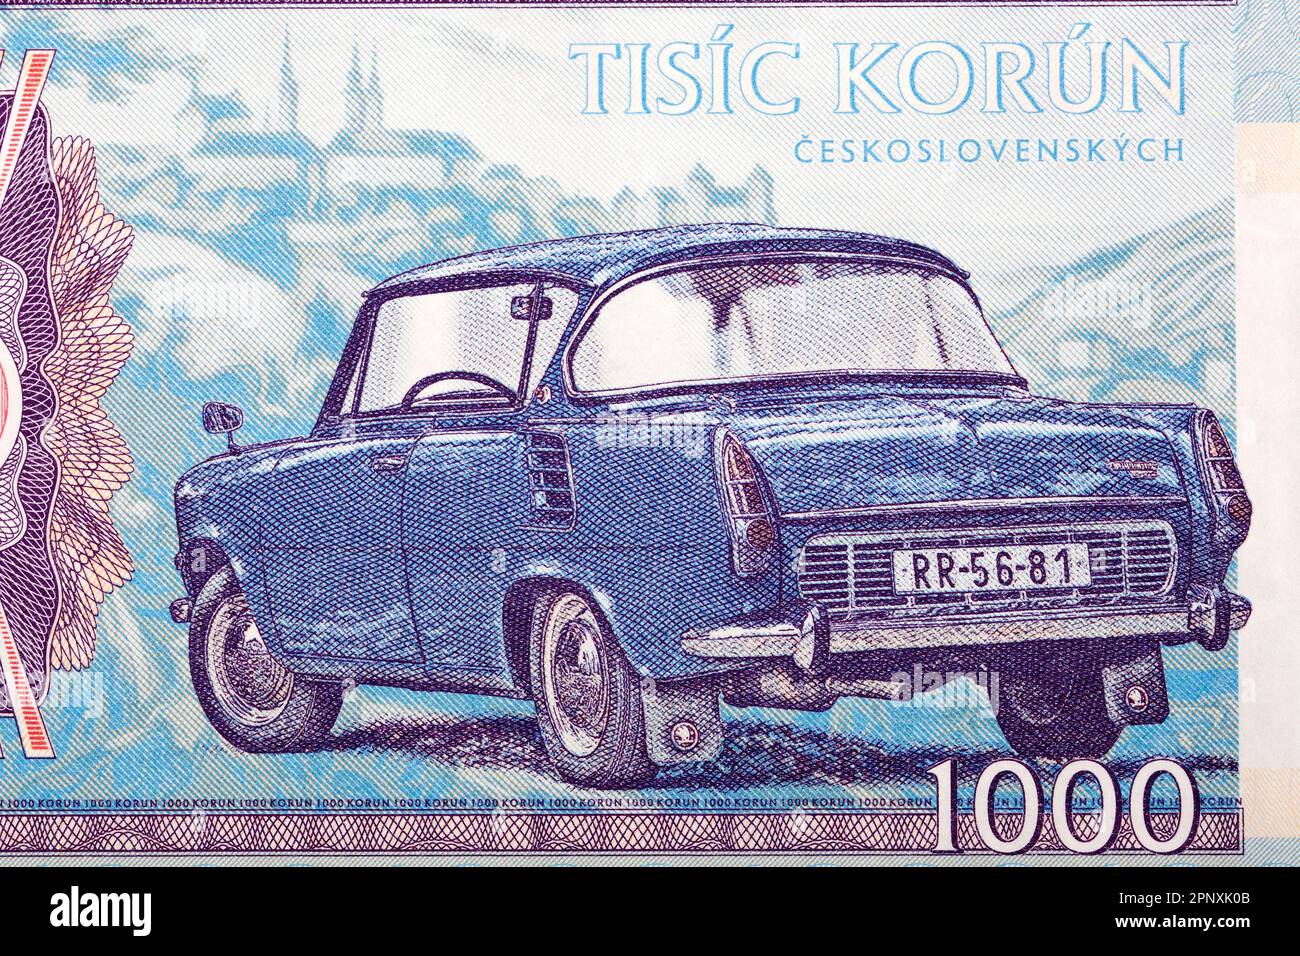 Old car from Czechoslovak money - Koruna Stock Photo